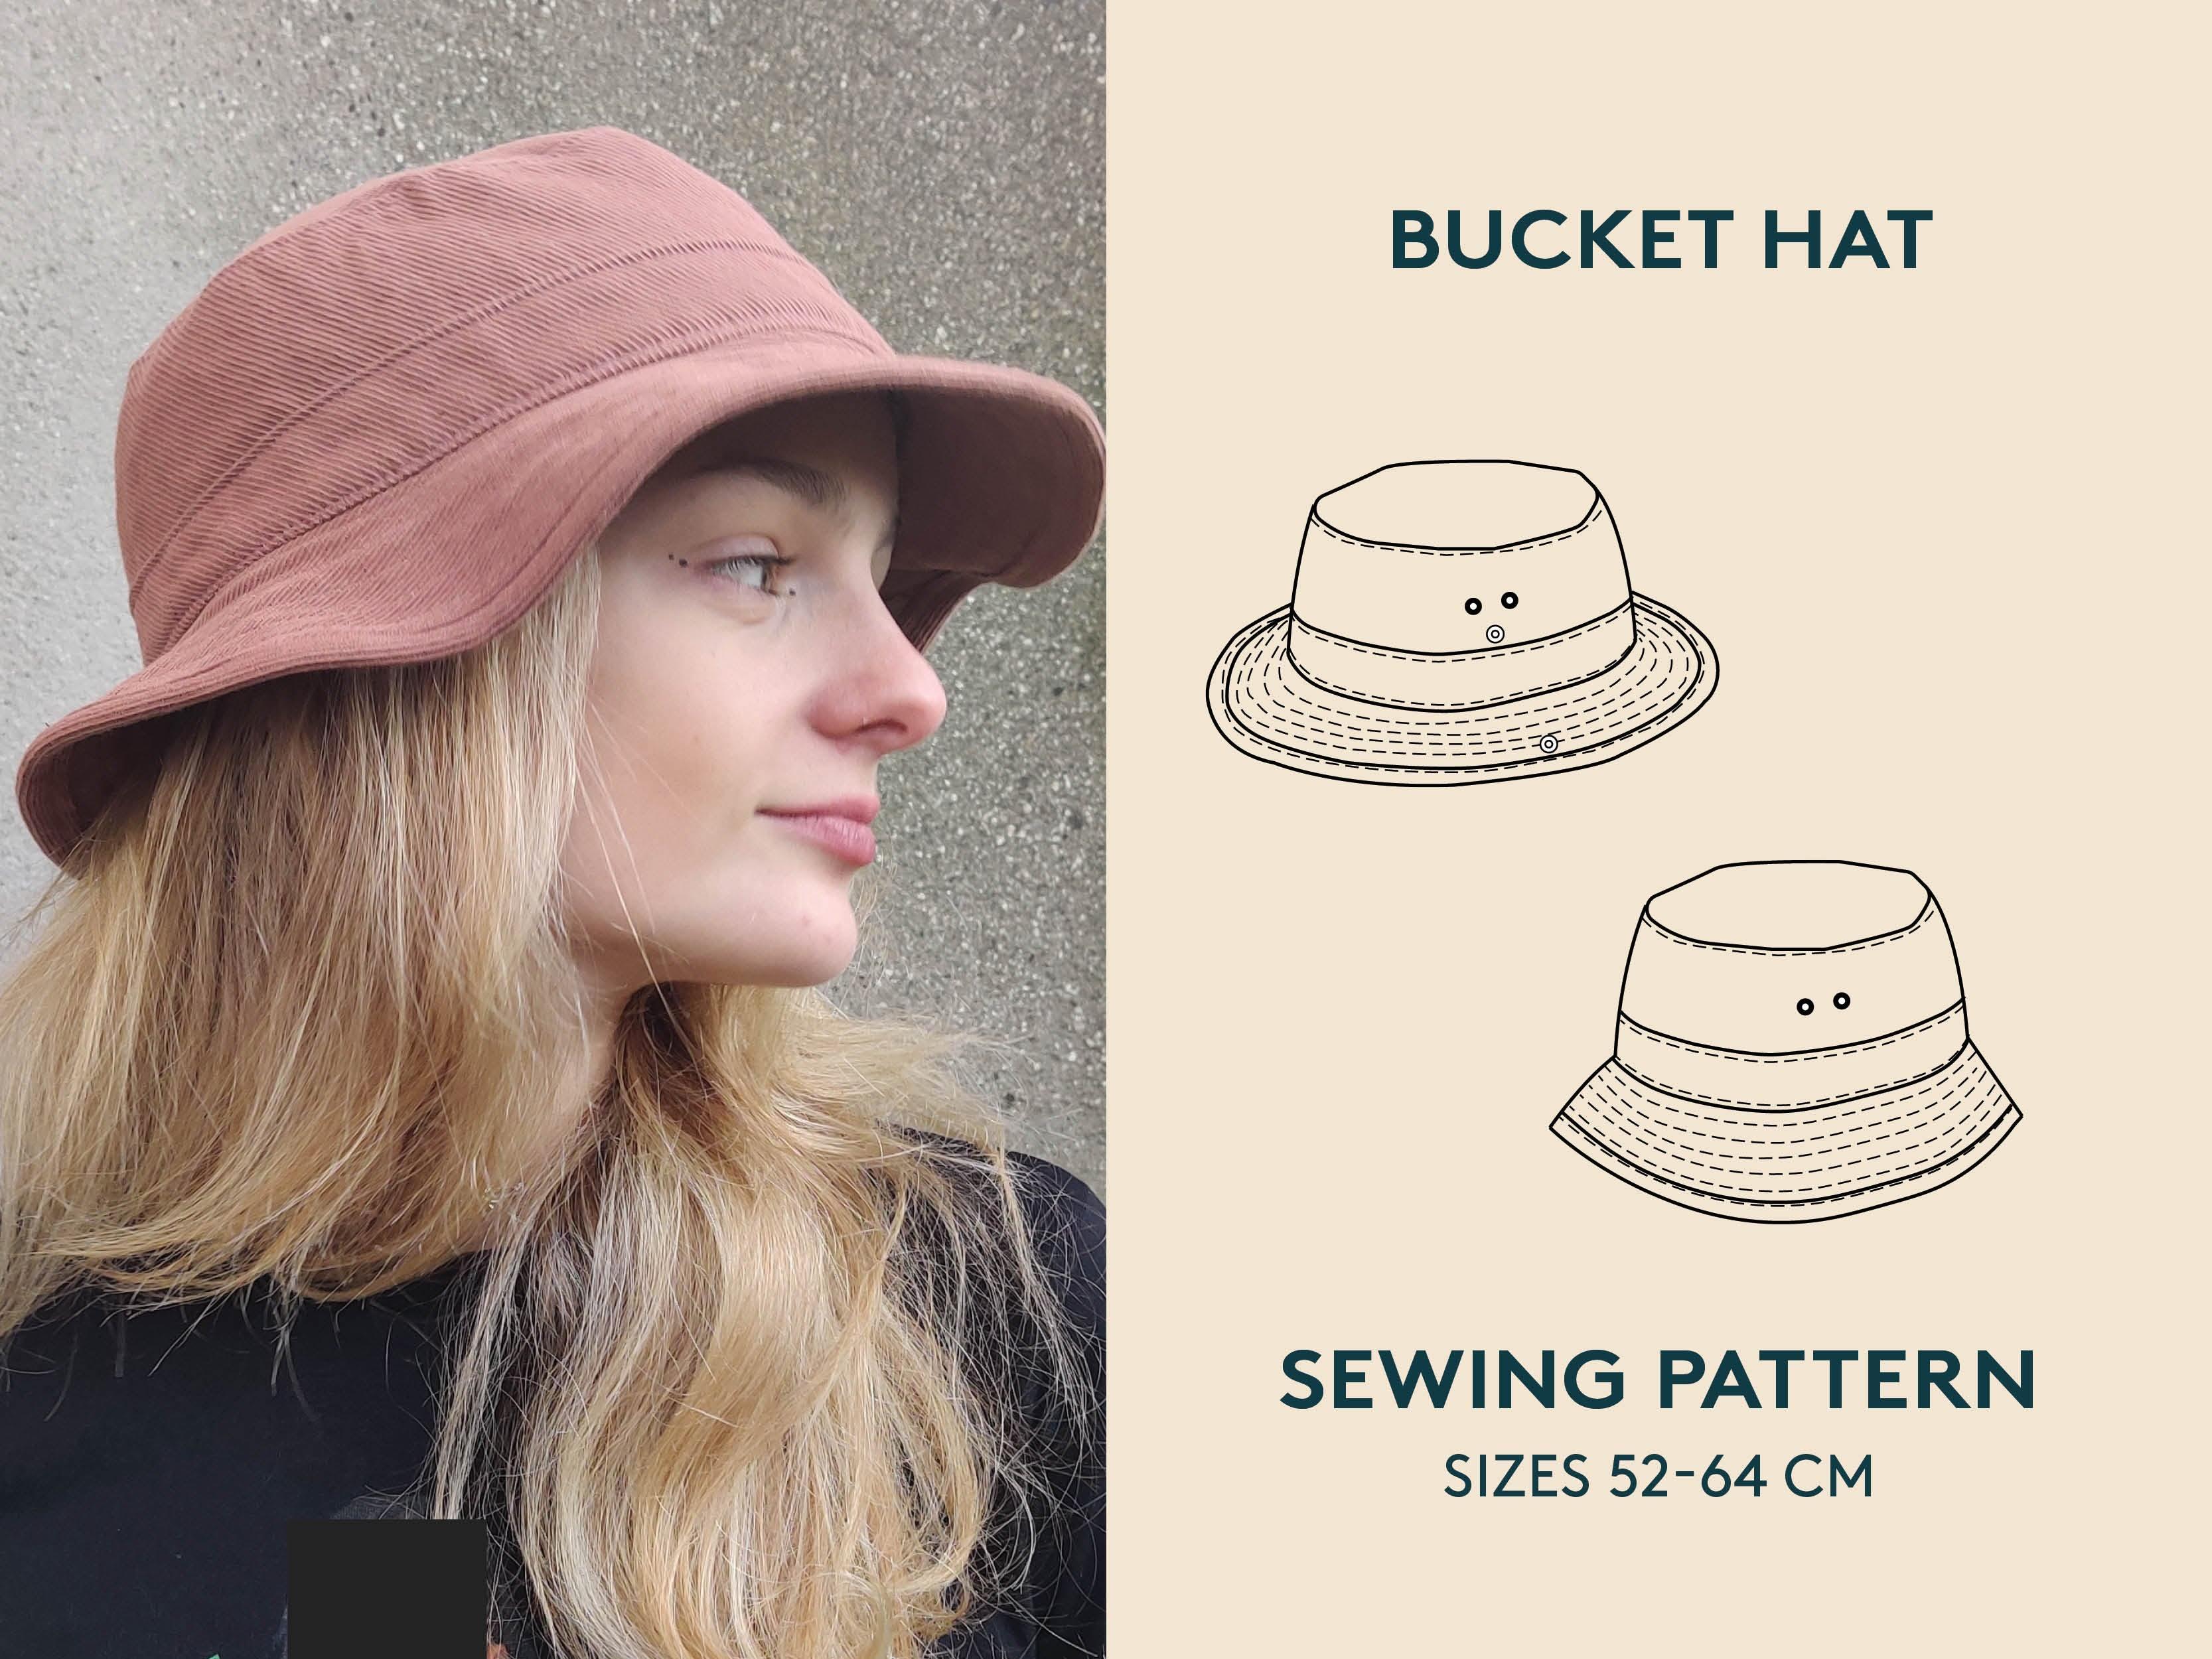 Bucket hat sewing pattern, Spara 86% fantastisk rabatt - www